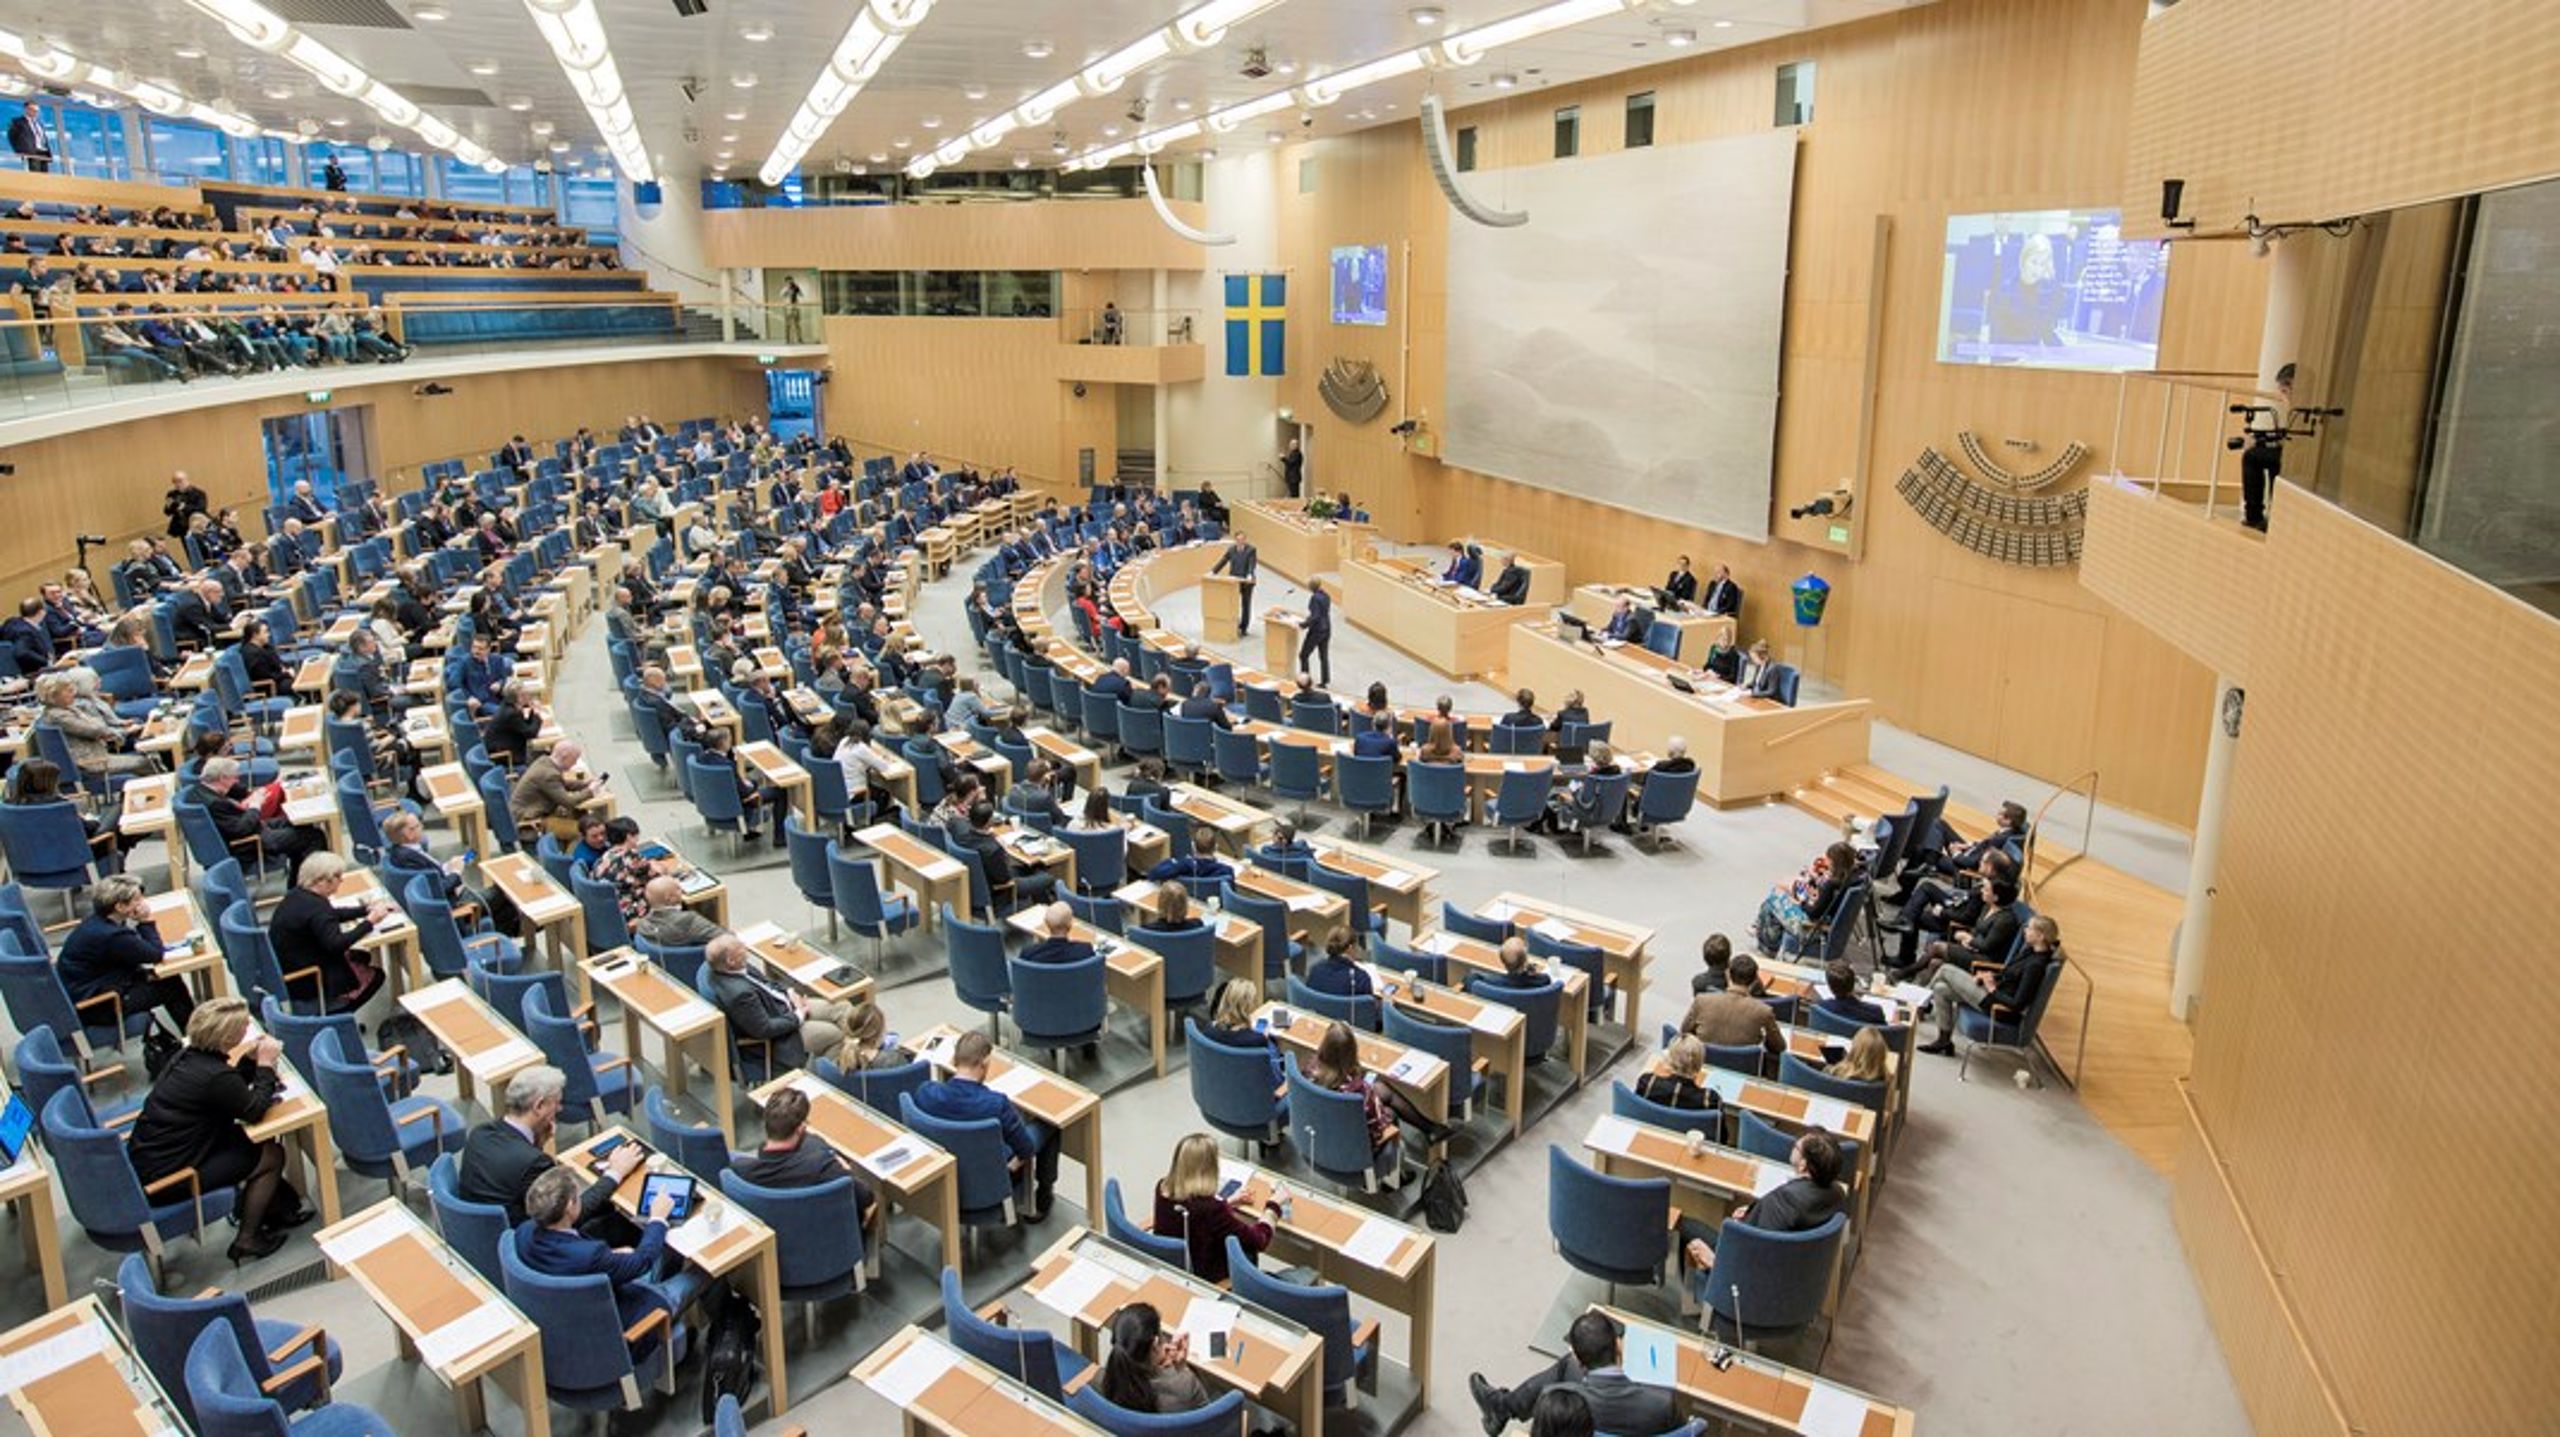 "Om lagändringen nästa vecka röstas igenom en andra gång skulle det allvarligt begränsa yttrandefriheten." skriver bland andra Sveriges Televisions vd Hanna Stjärne och Publicistklubbens ordförande Robert Aschberg i debattartikeln i DN.